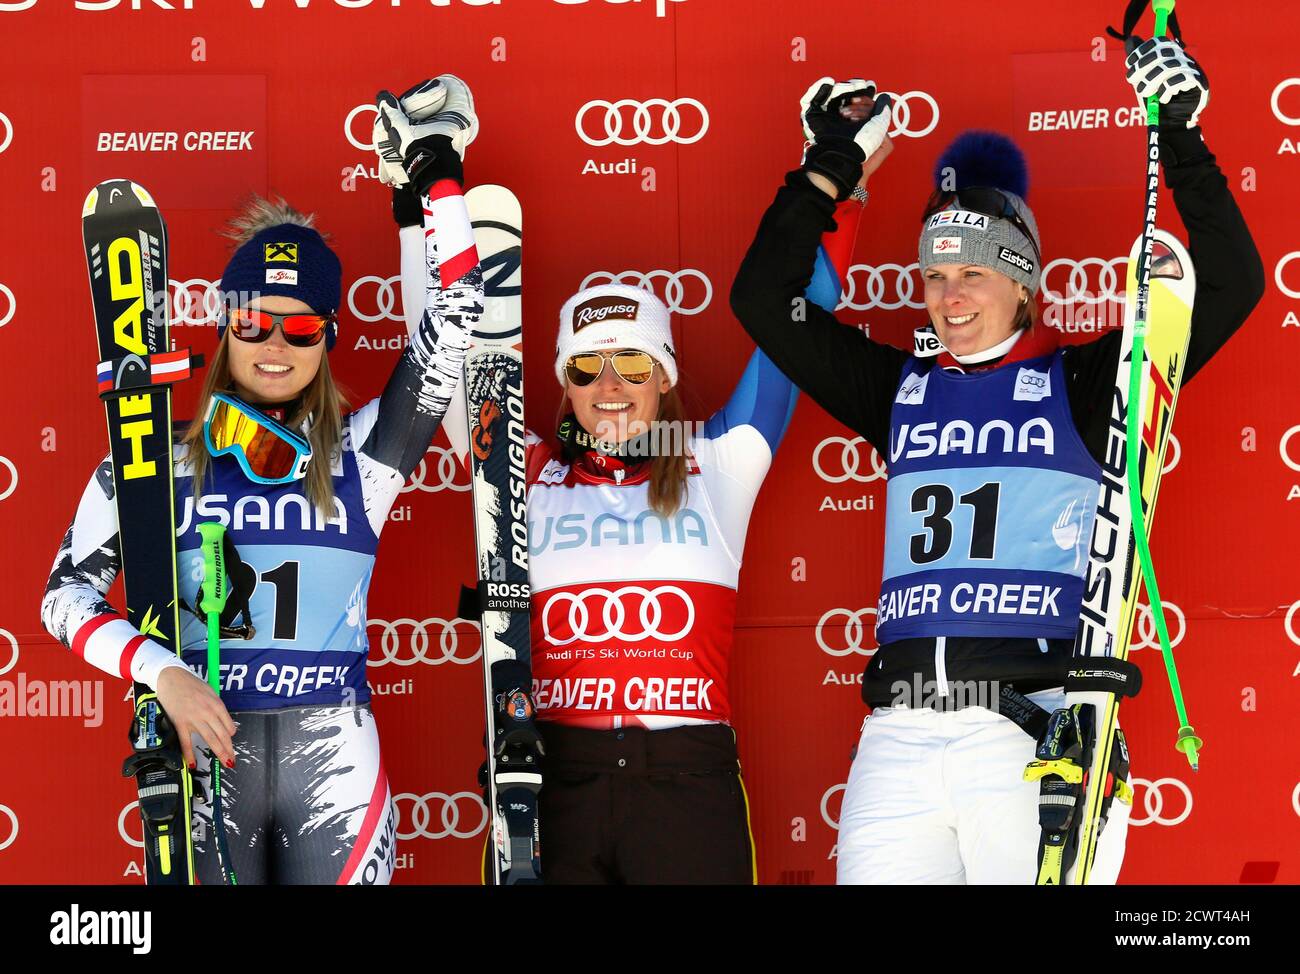 Lara Gut von Switzerland (C) feiert auf dem Podium nach dem Gewinn der  Frauen Weltcup Super-G-Skirennen in Beaver Creek, Colorado, 30. November  2013. Auf der linken Seite ist zweite platzierte Anna Fenninger